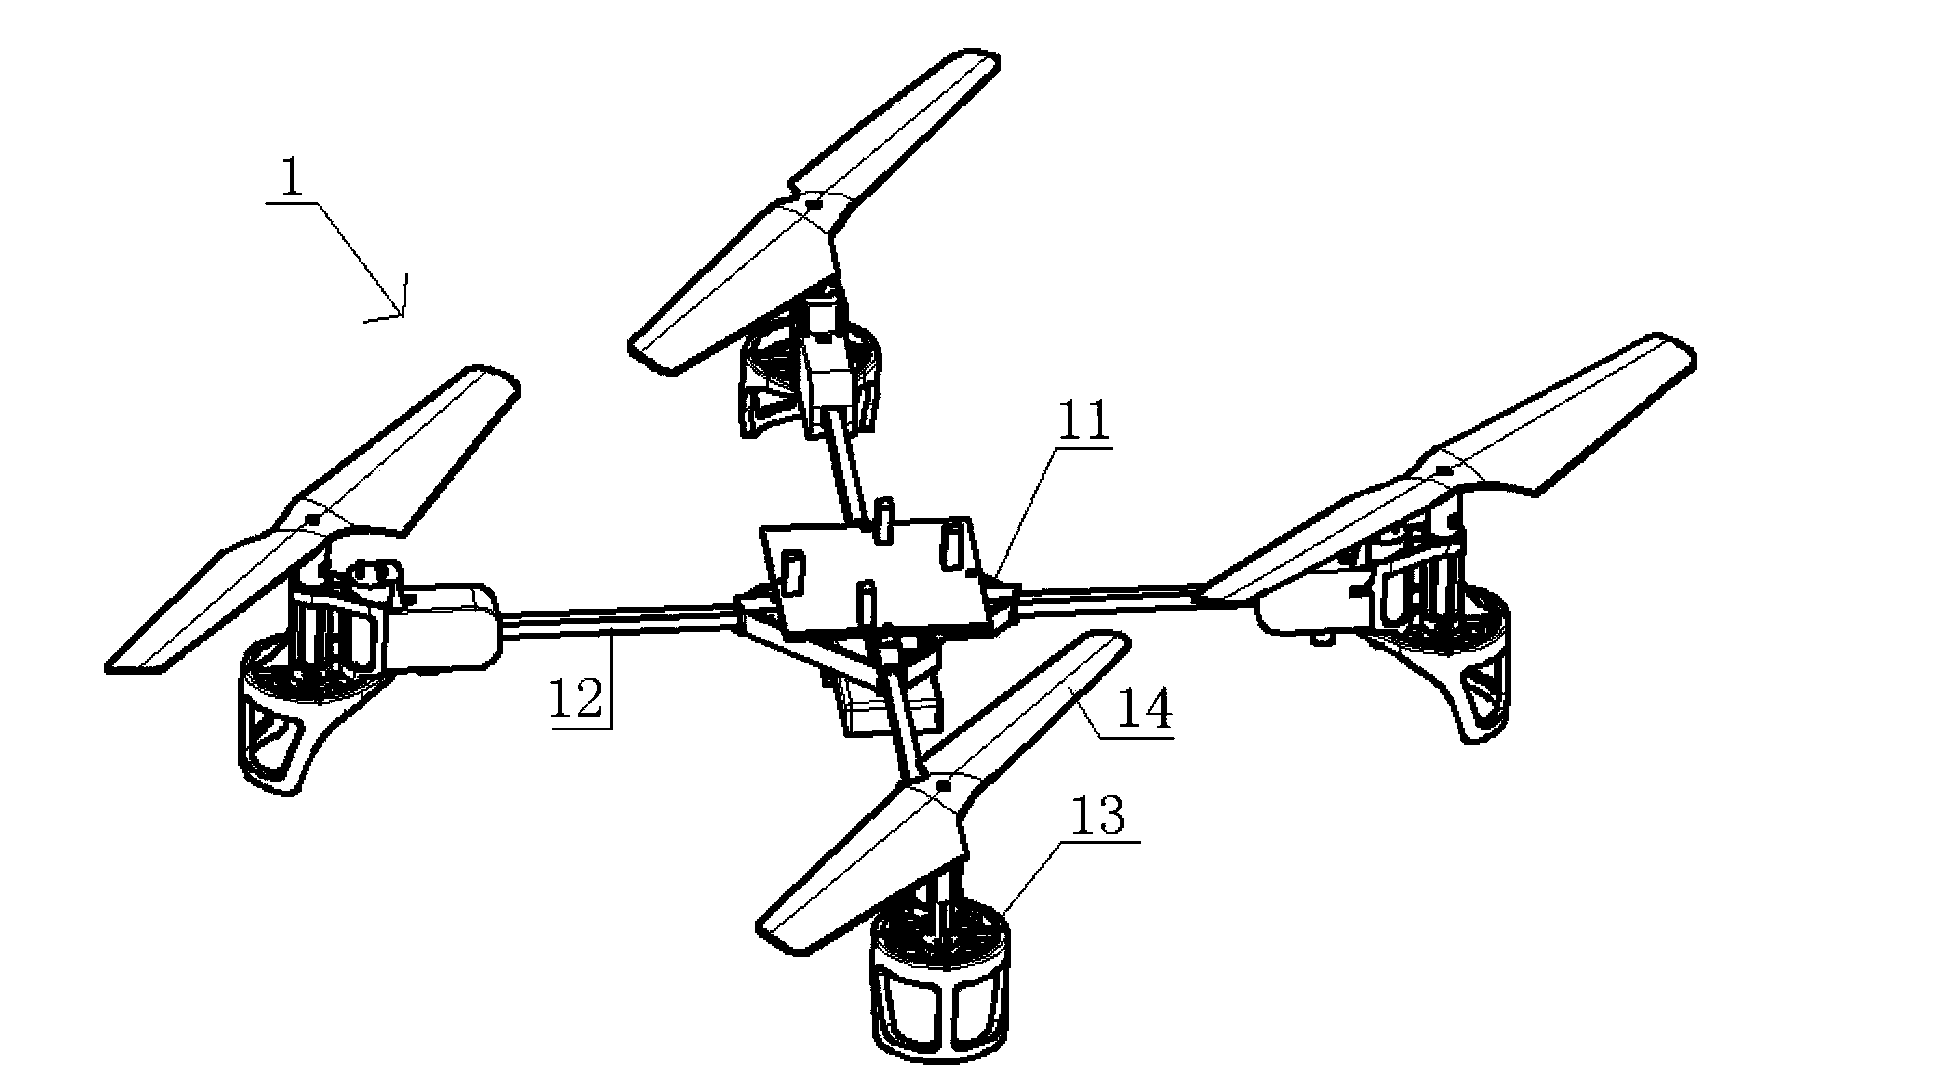 Multi-rotor wing aircraft